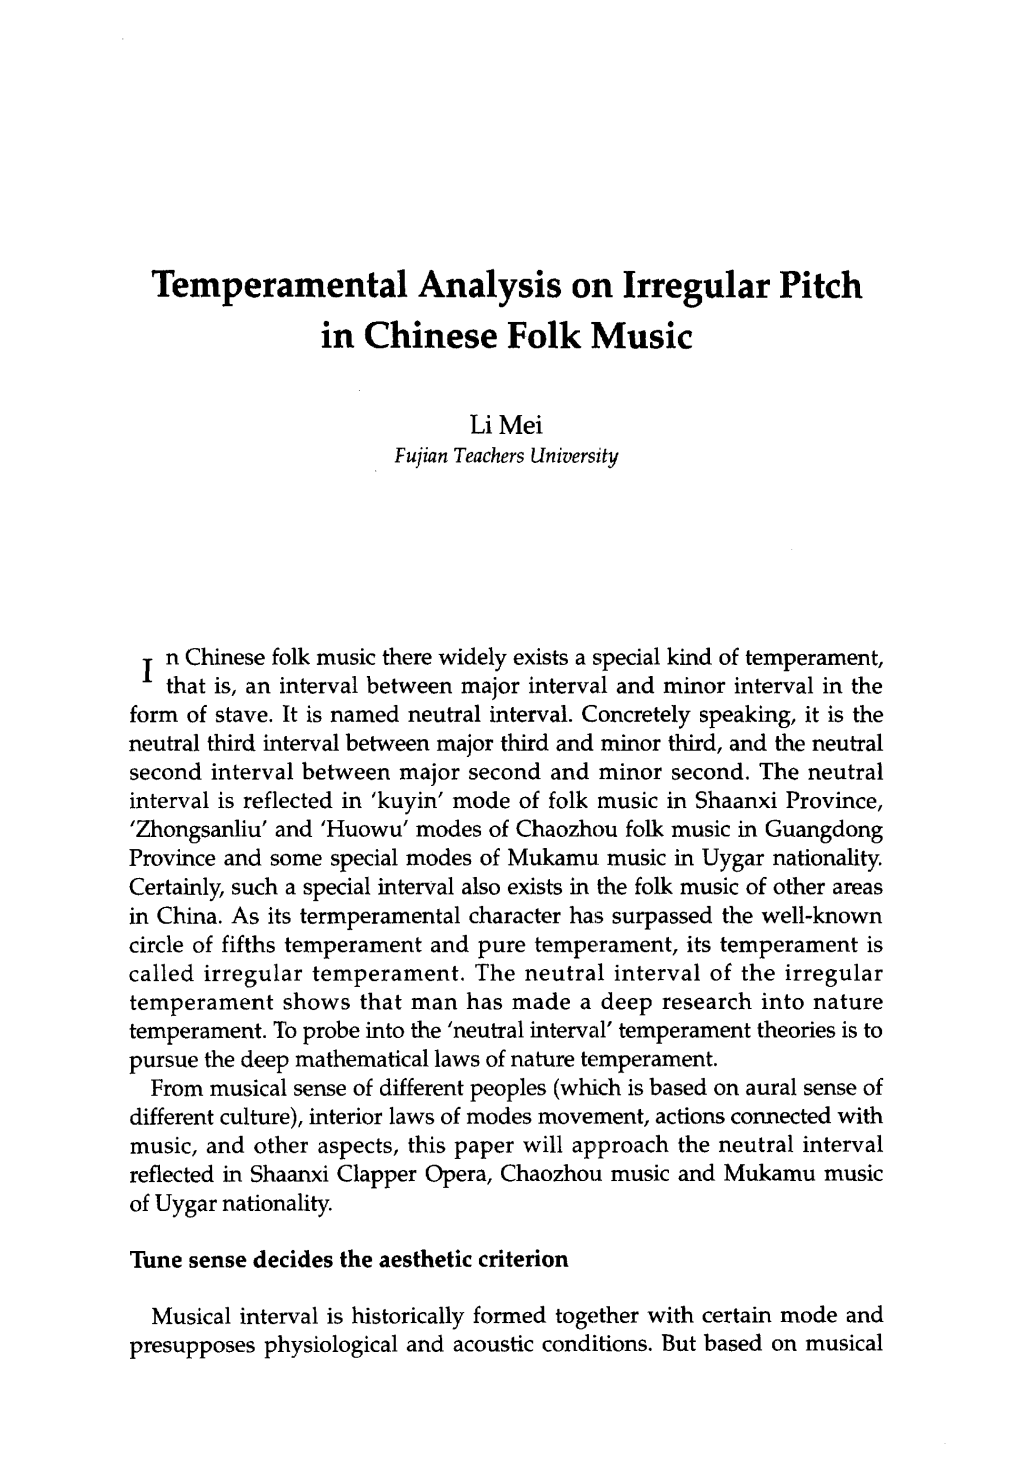 Temperamental Analysis on Irregular Pitch in Chinese Folk Music